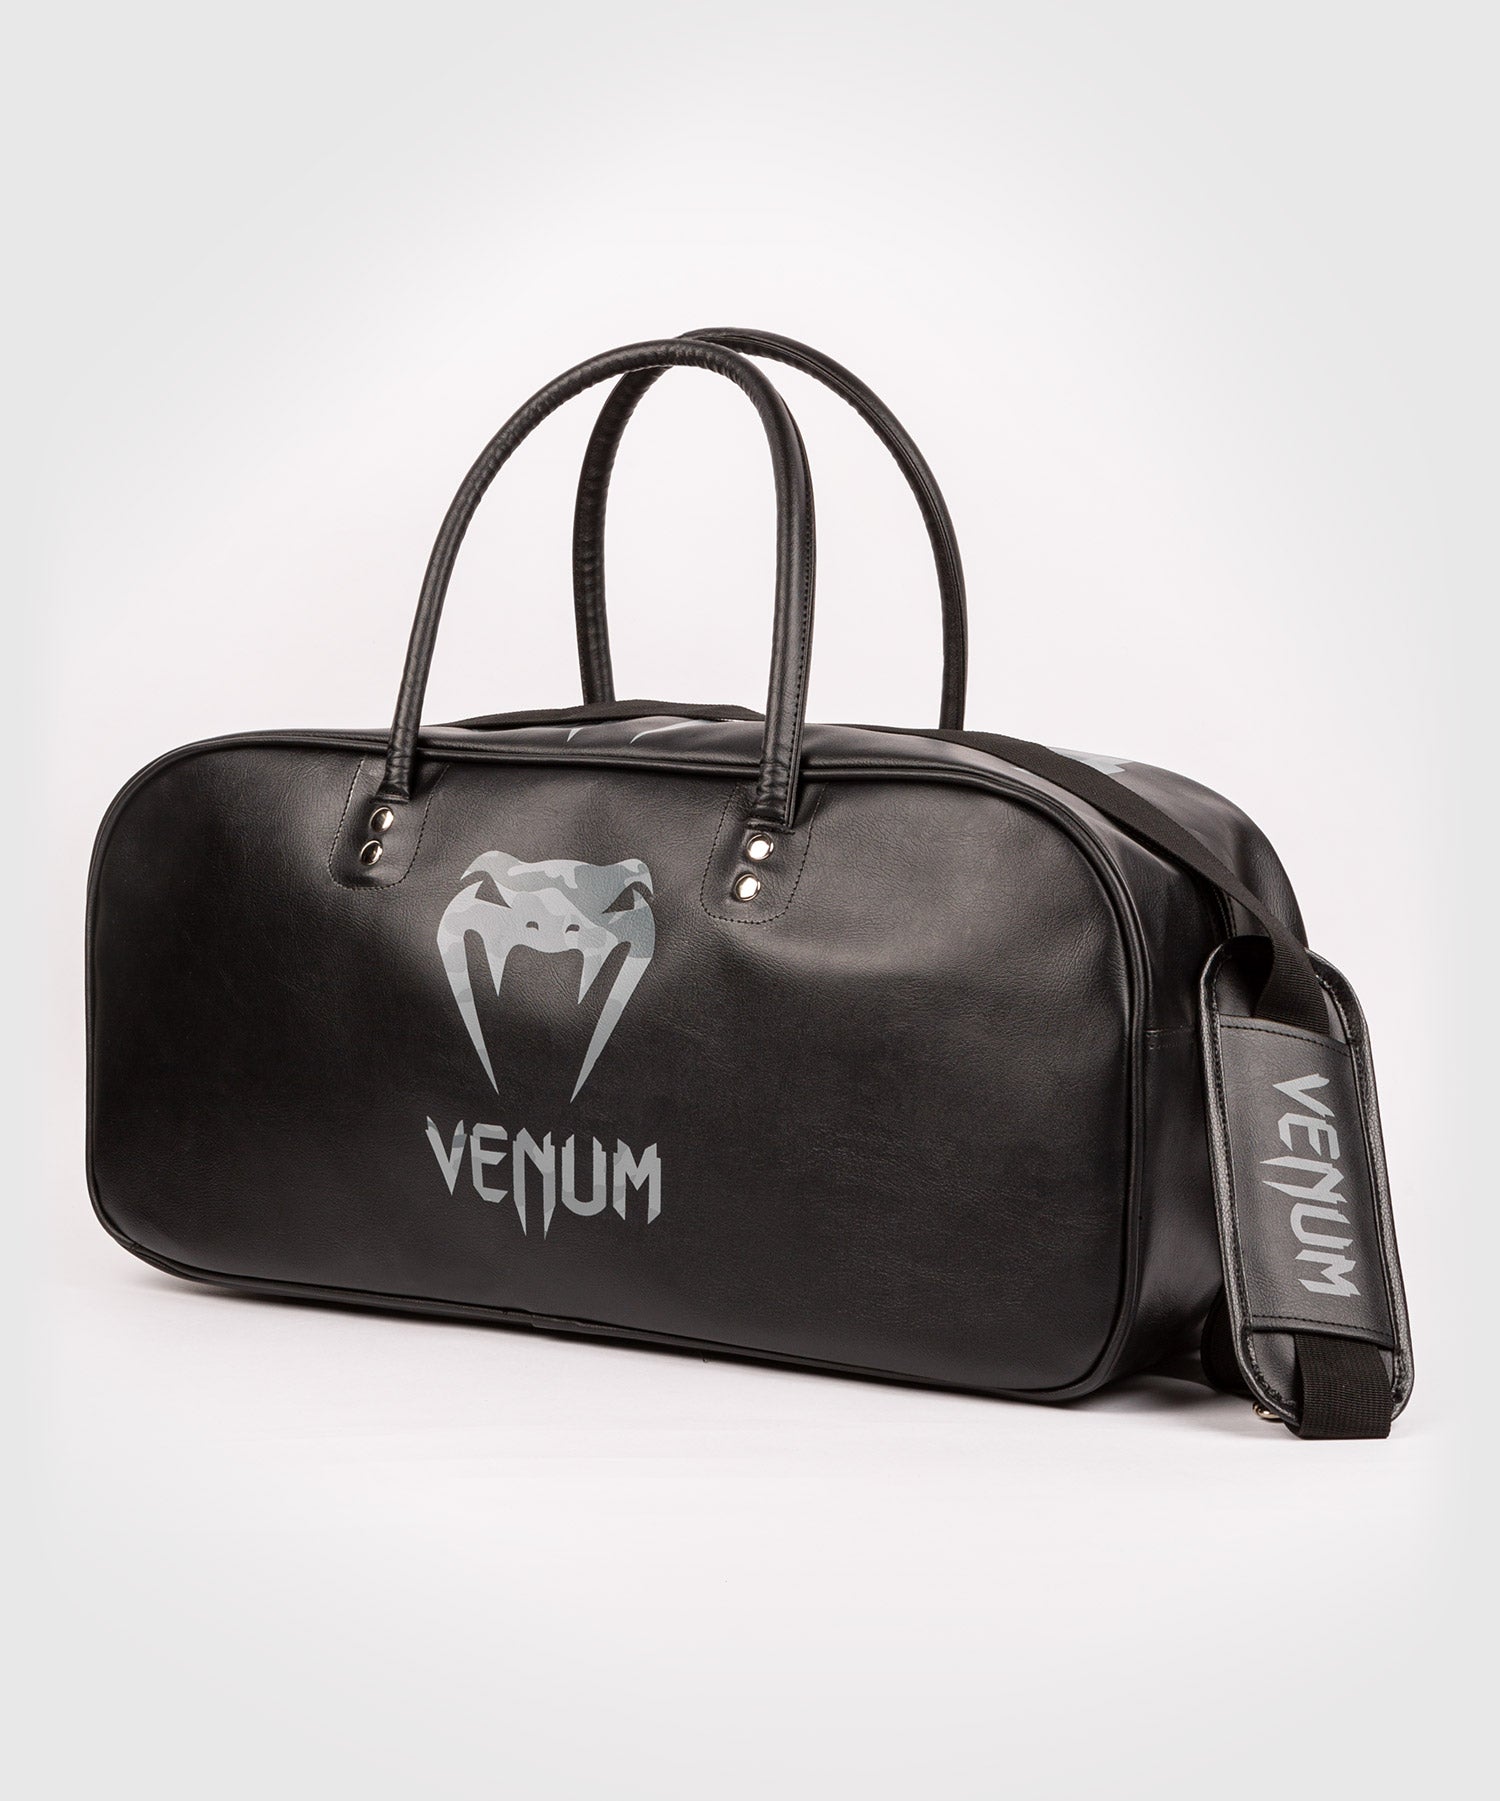 Sac de sport Venum Origins - Noir/Urban Camo - Grand modèle – Venum France